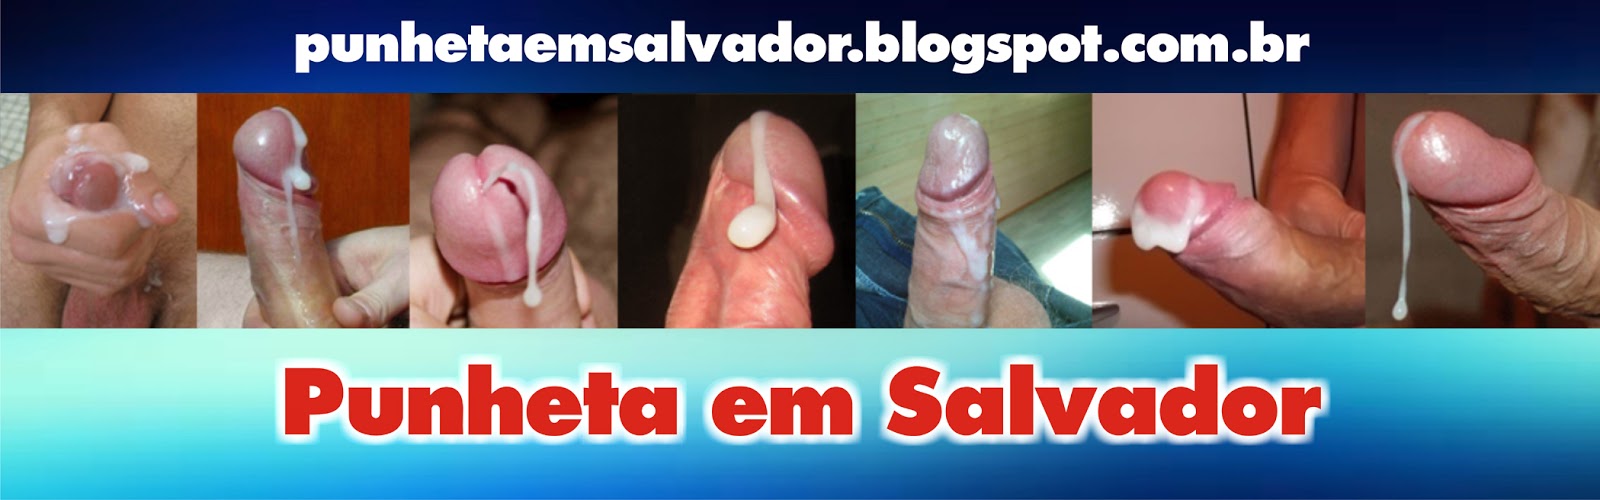 http://punhetaemsalvador.blogspot.com.br